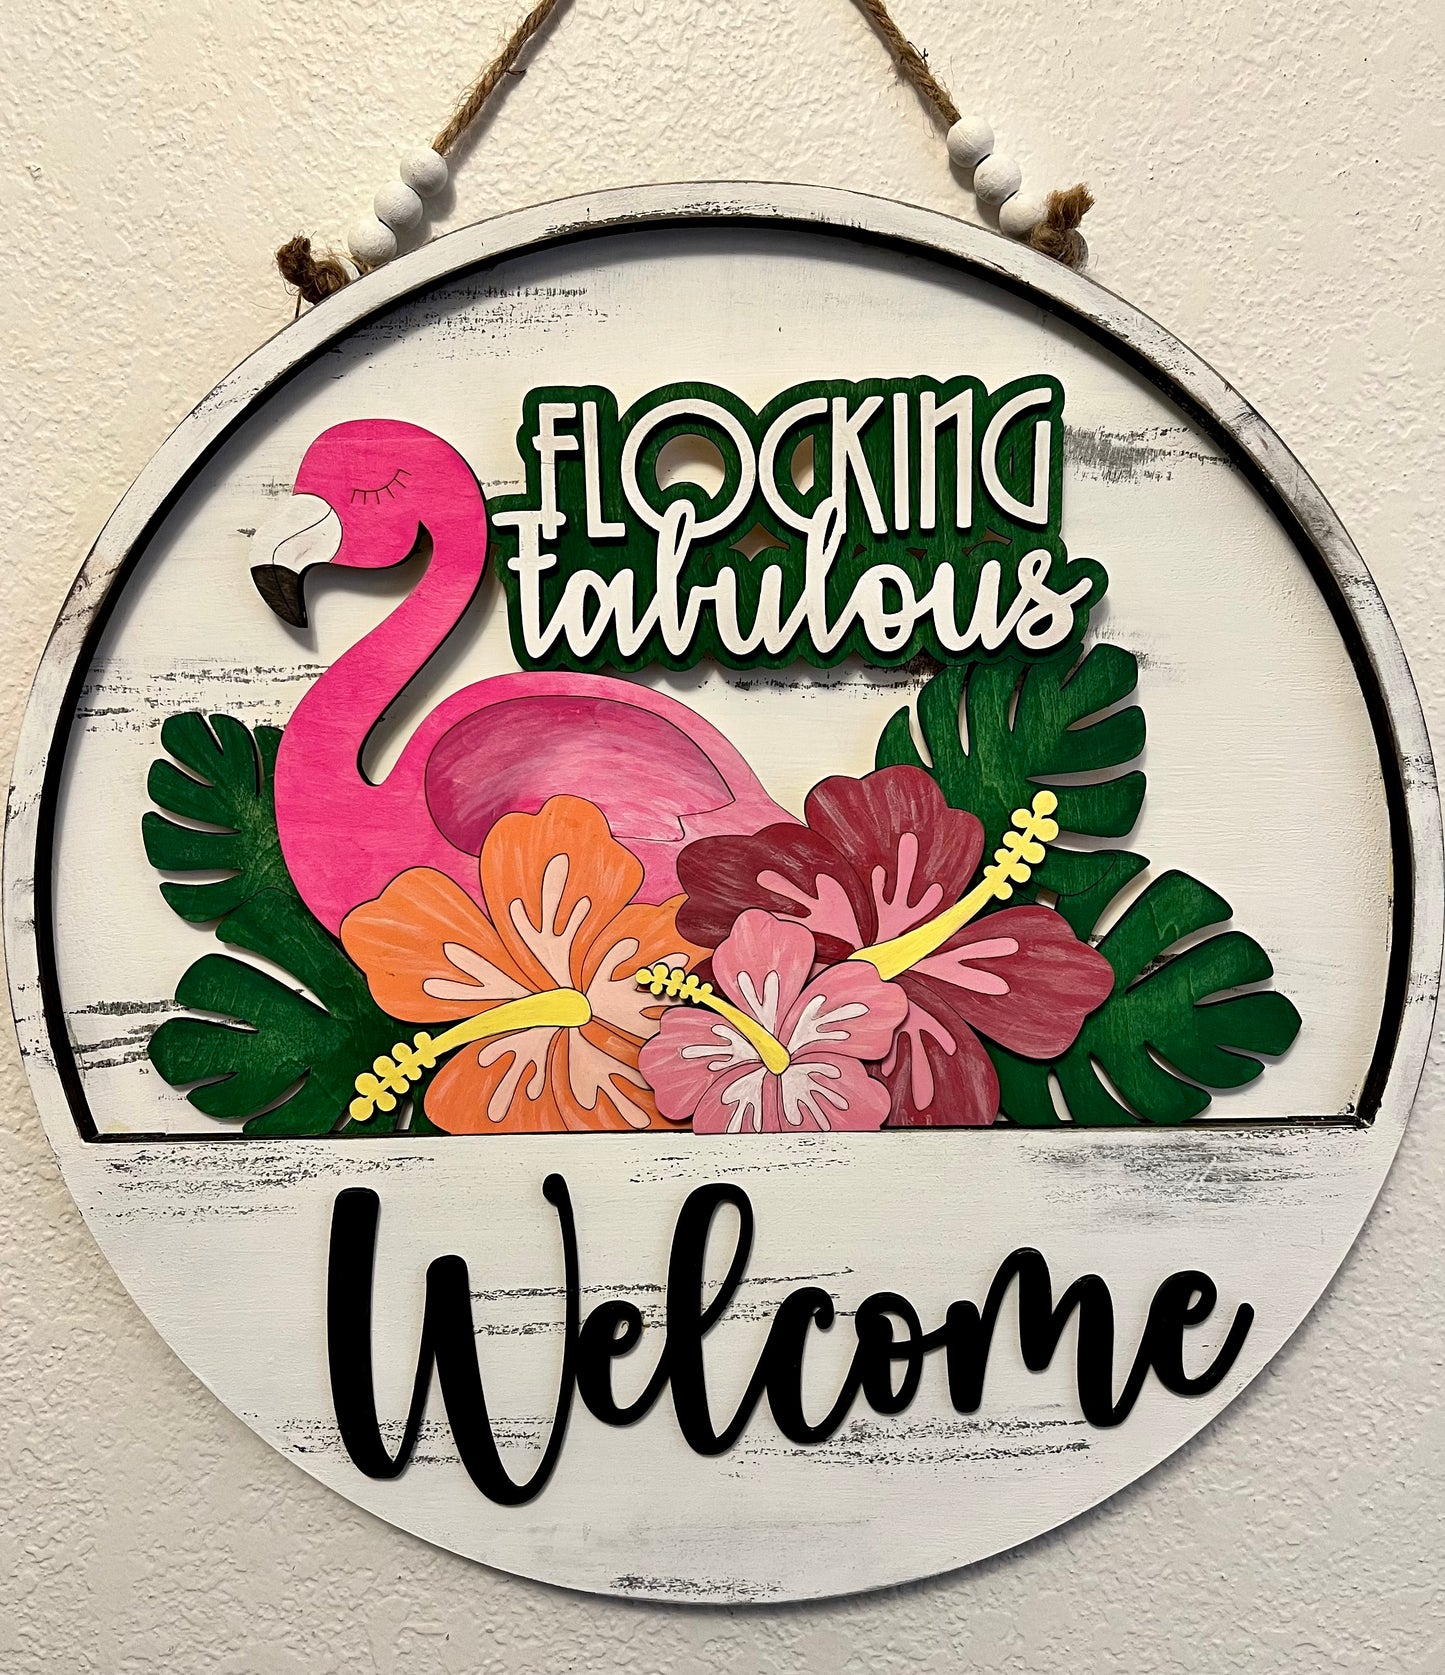 Interchangeable Welcome Door Hanger + Flamingo Flocking Fabulous add-on insert